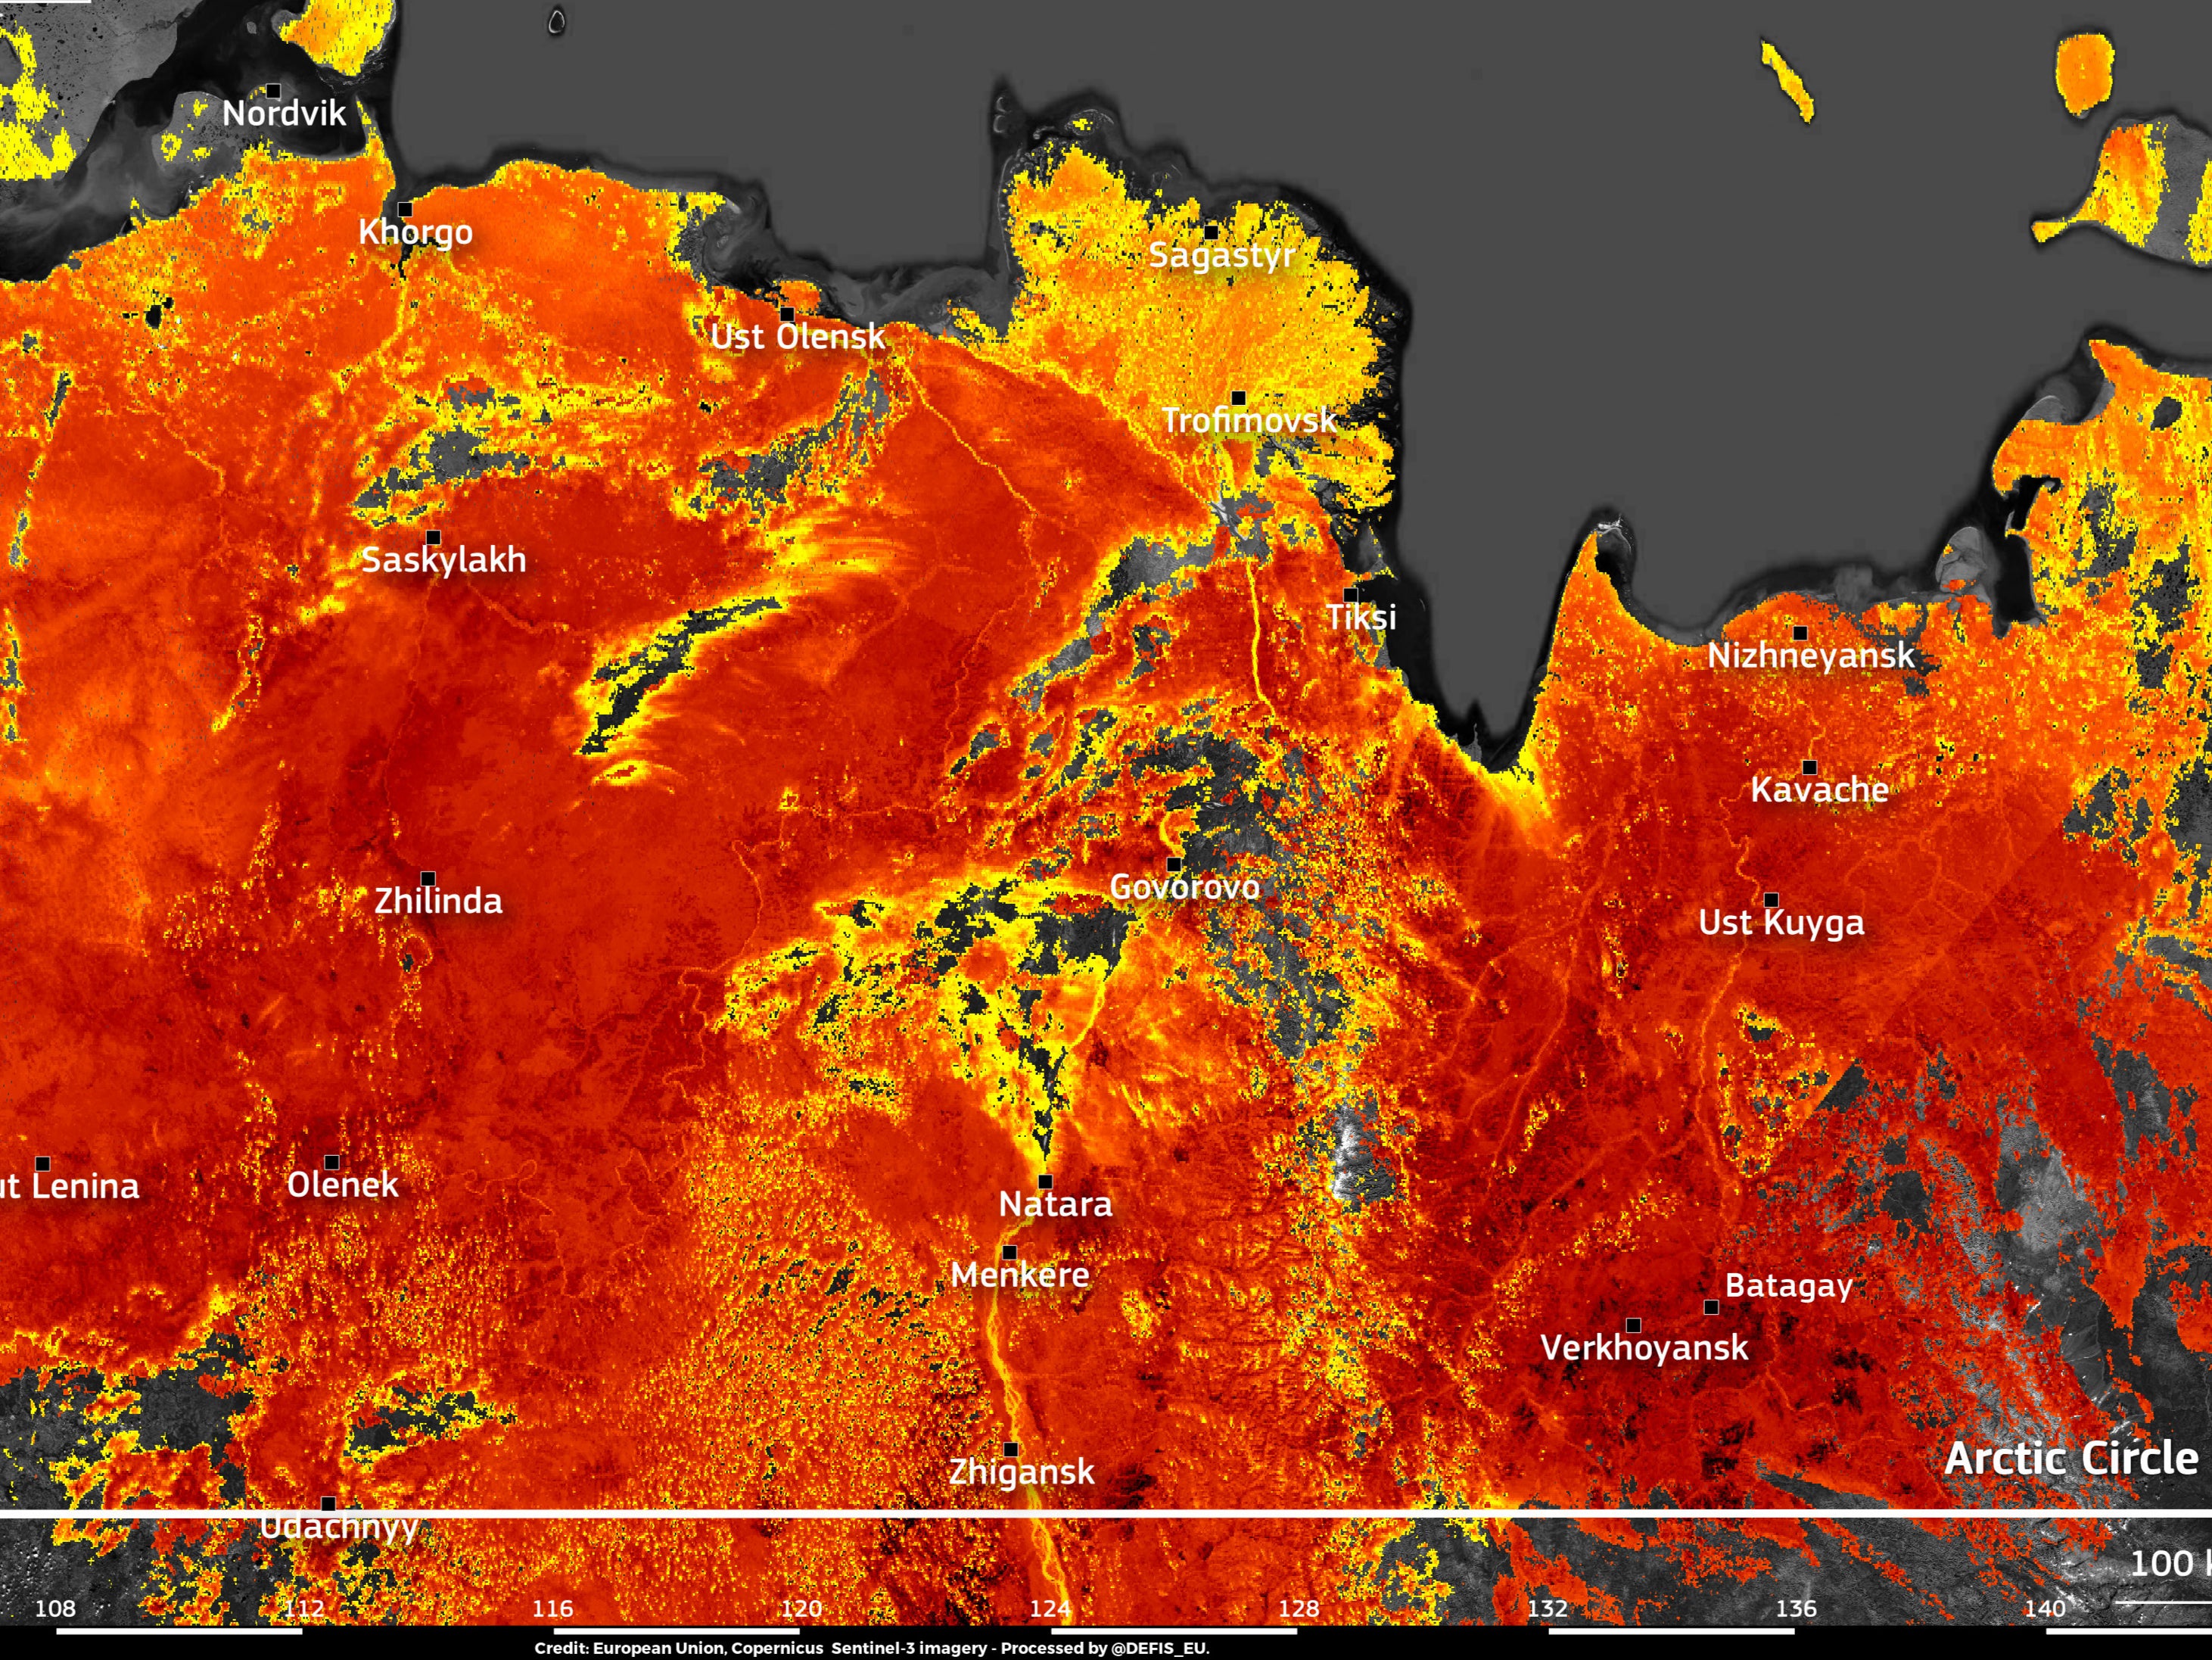 Una imagen tomada por el satélite Copernicus Sentinel-3 de la UE muestra que las temperaturas de la superficie terrestre alcanzan casi los 50 grados Celsius (122 grados Fahrenheit) alrededor de la ciudad de Verkhoyansk